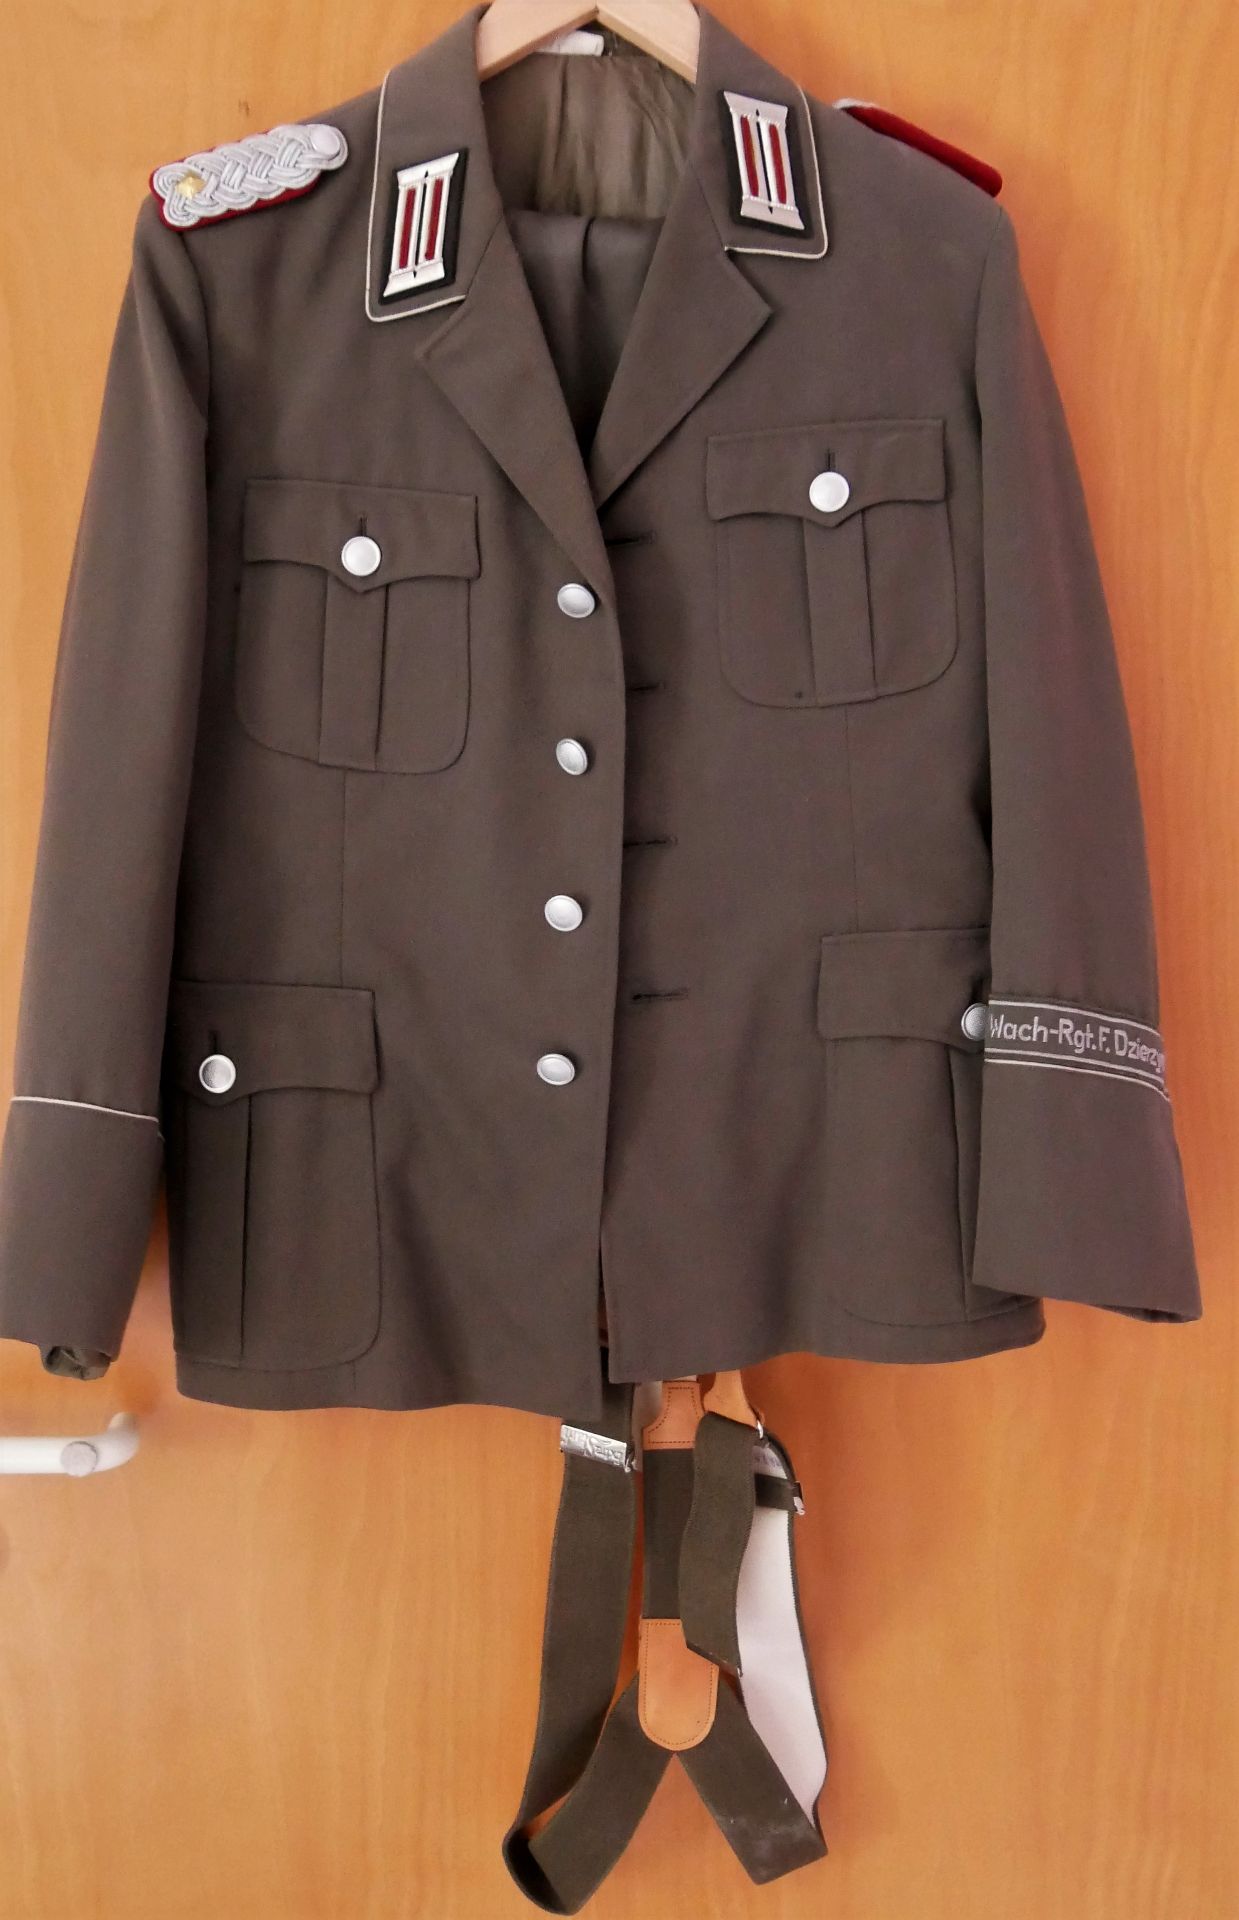 Aus Sammelauflösung! DDR Uniform Jacke mit Effekten und dazugehöriger Hose und Hosenträger, Wach-